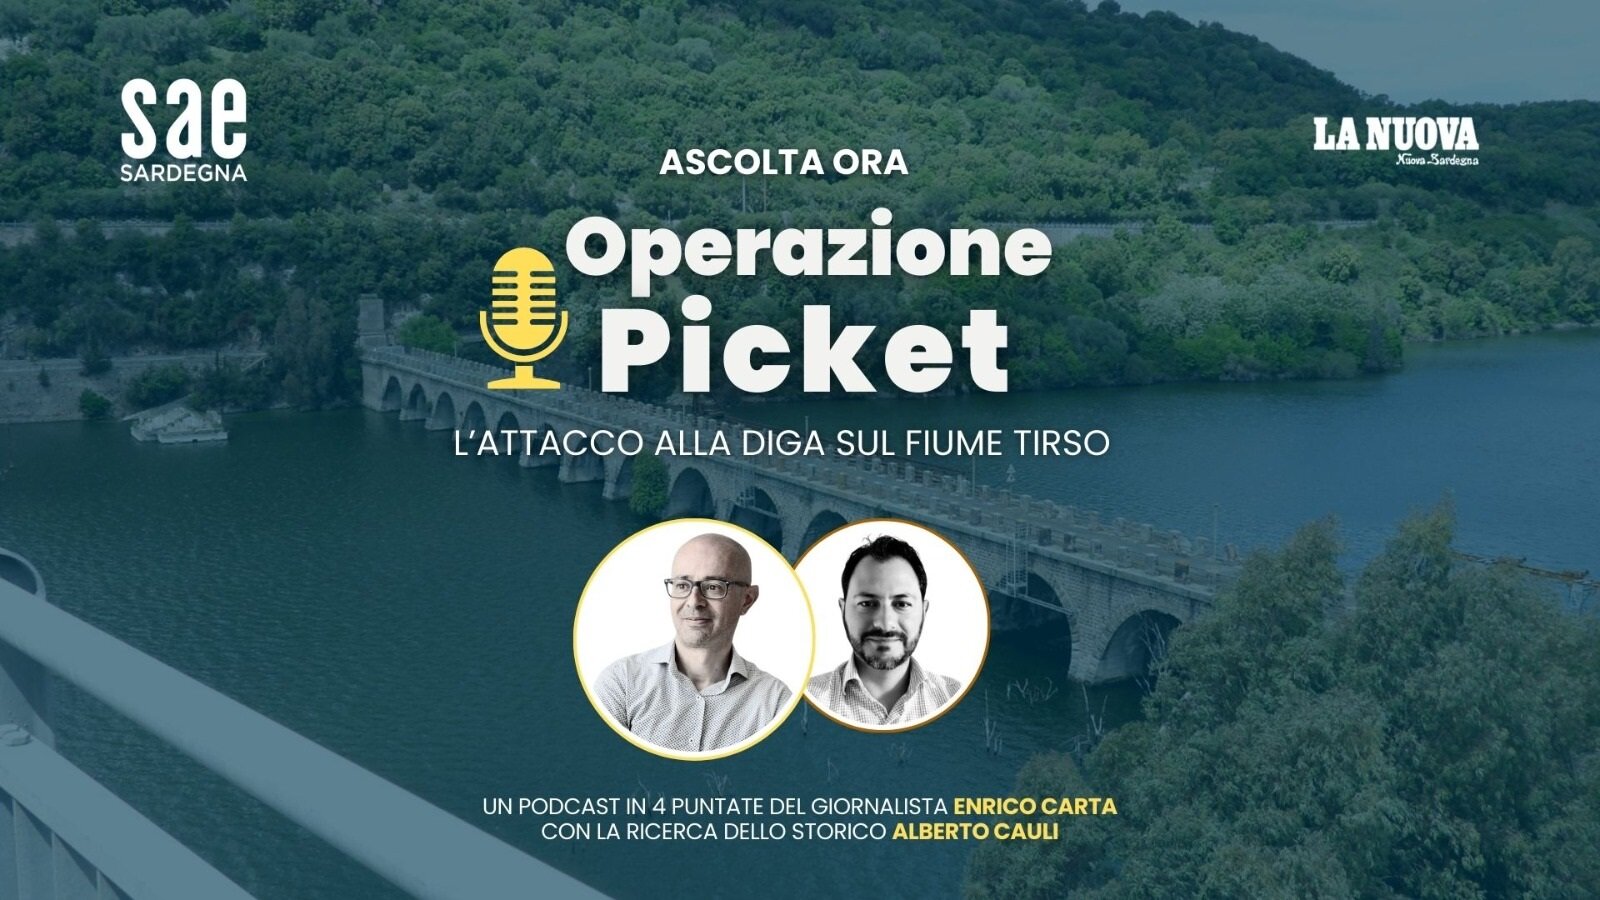 Operazione Picket, l'attacco alla diga sul fiume Tirso: il nuovo podcast di Enrico Carta